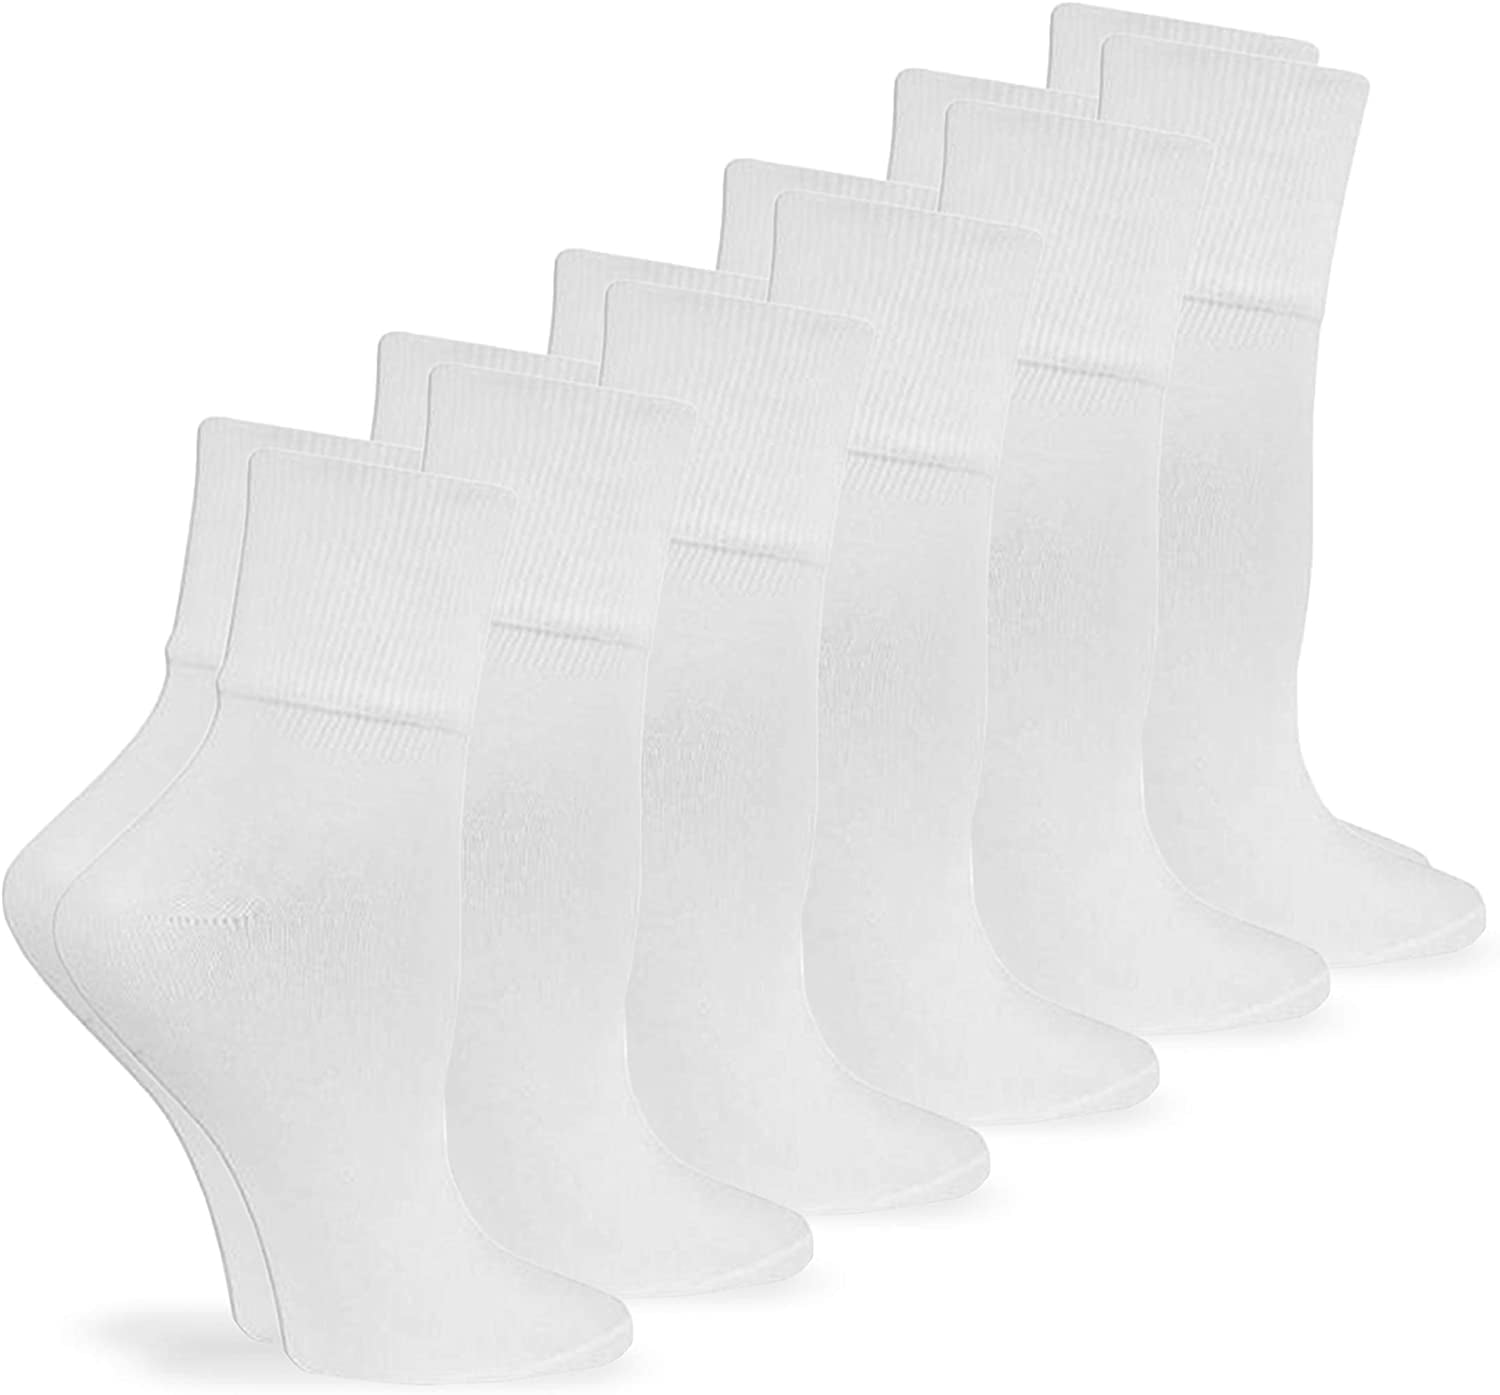 Jefferies Socks Womens Organic Cotton Seamless Turn Cuff Socks, 6 Pair ...